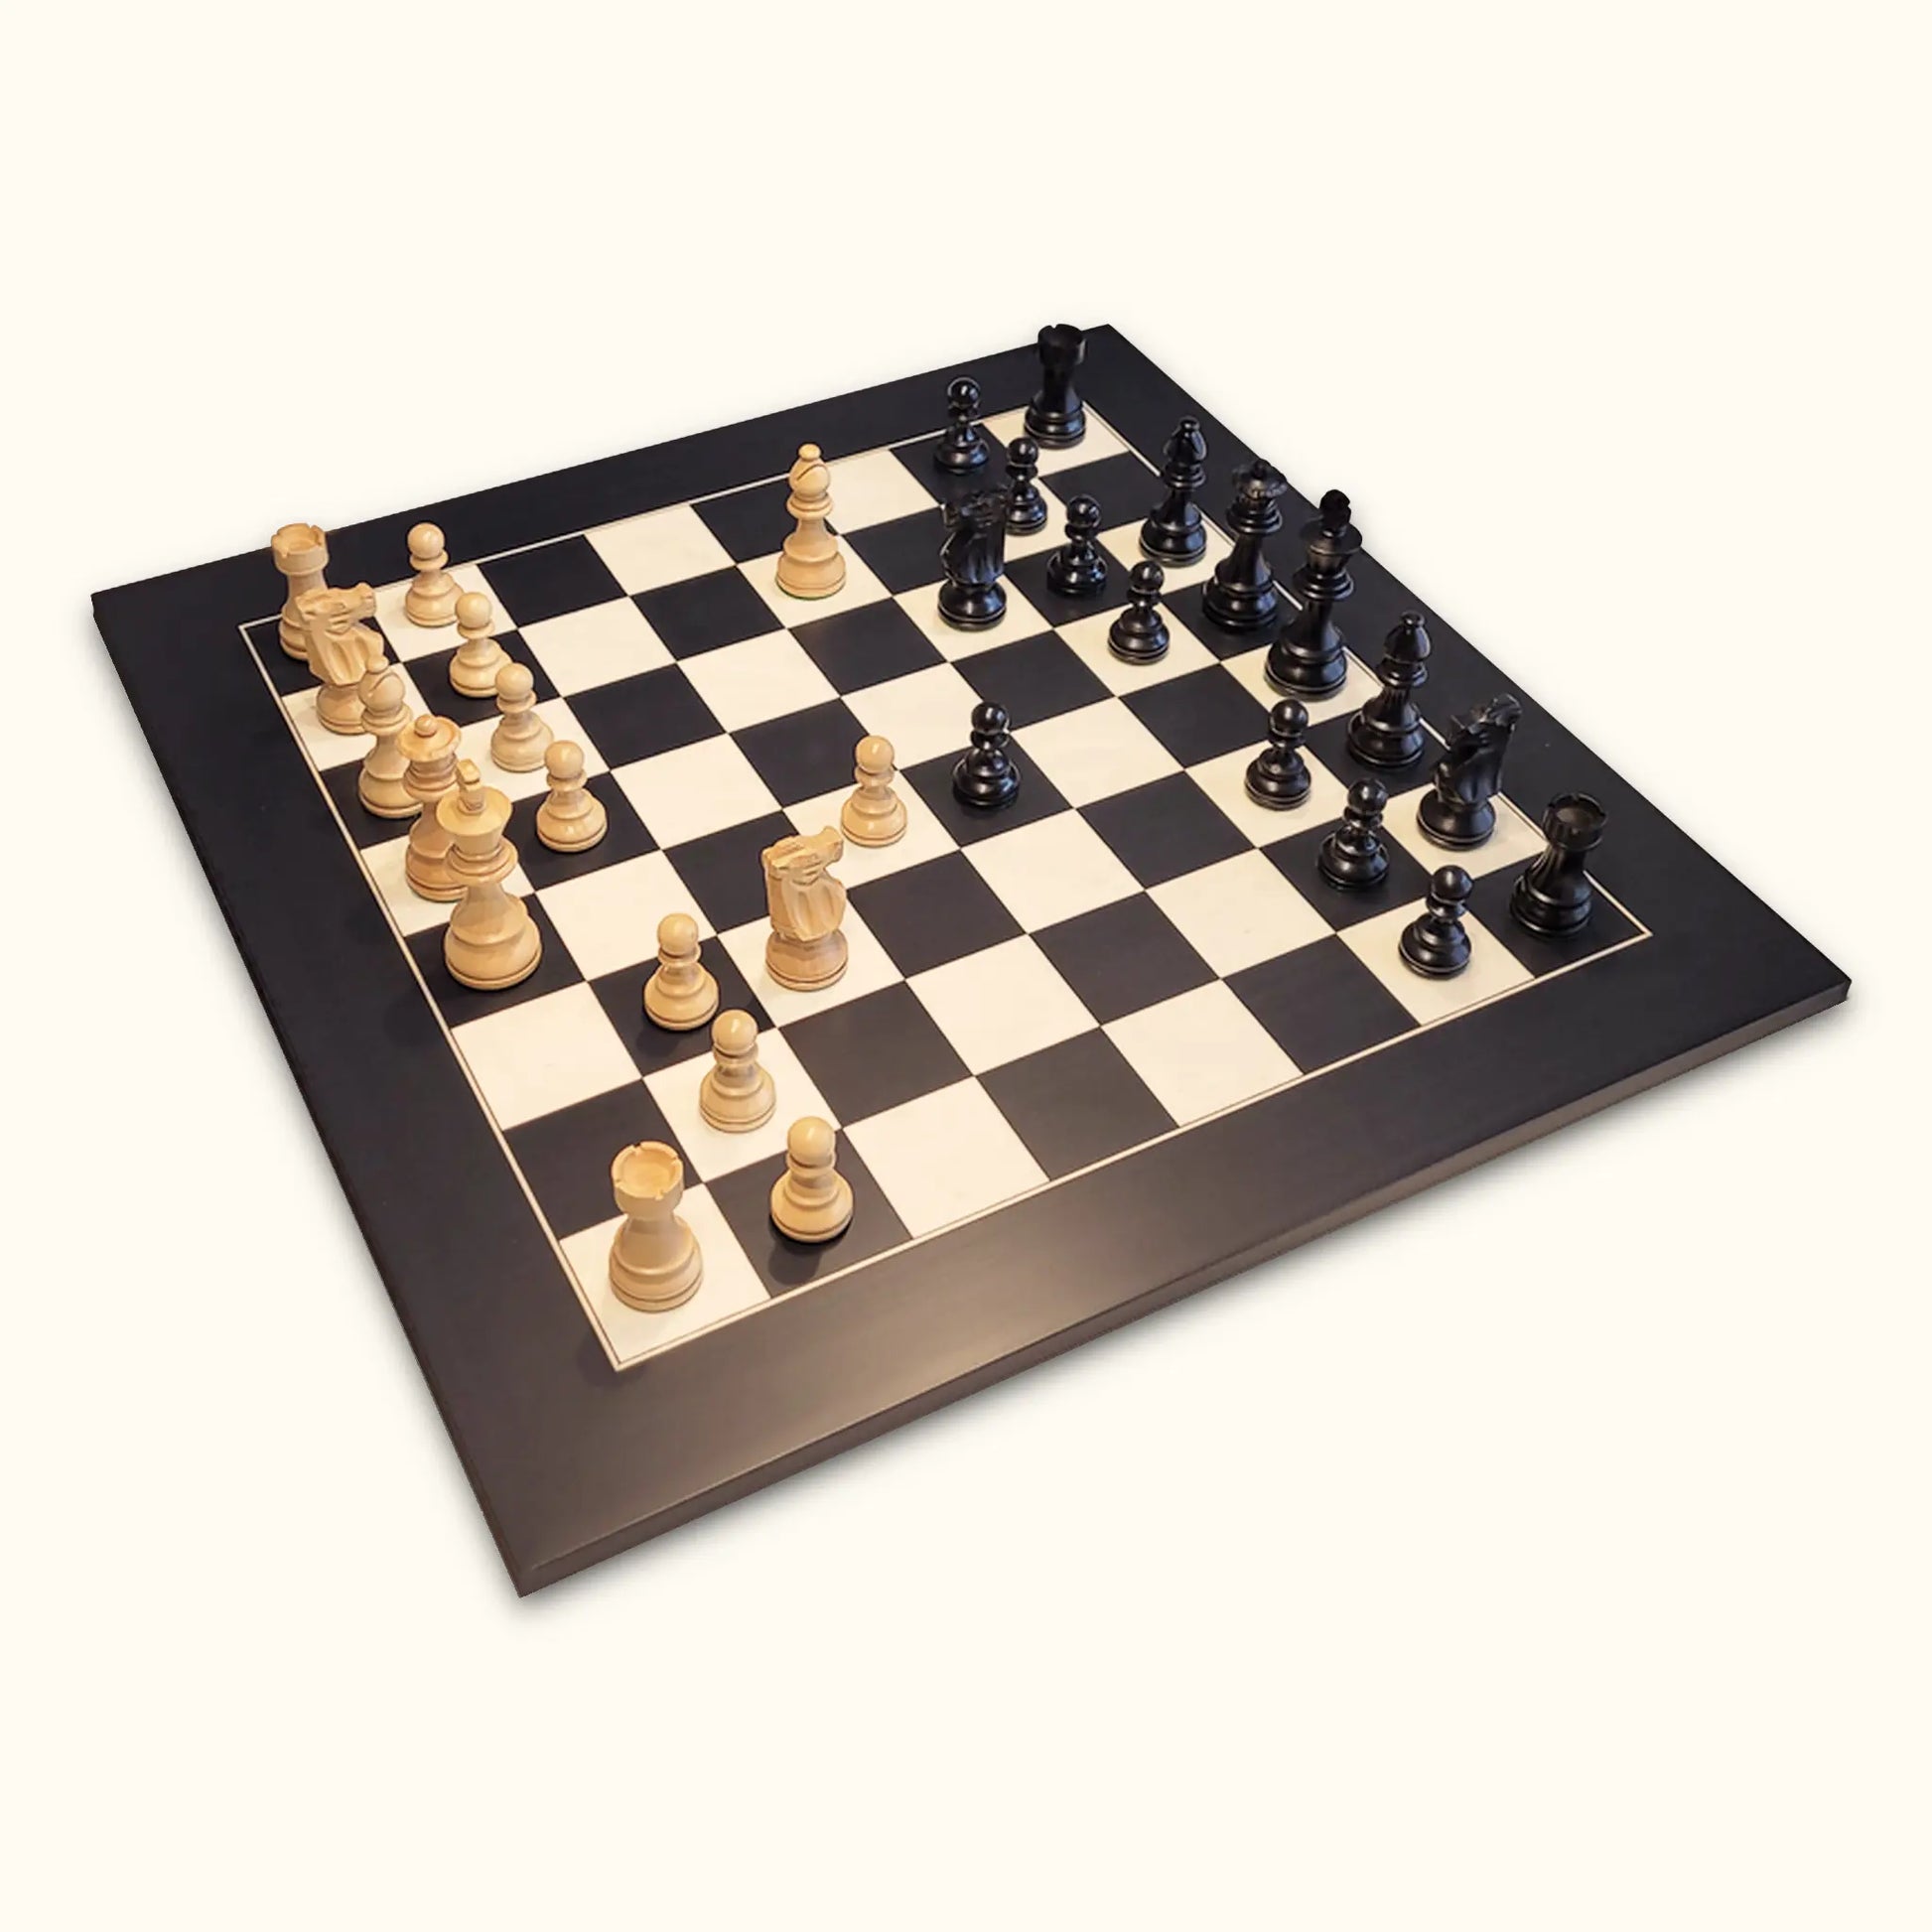 Chess pieces French Staunton ebonized on black deluxe chessboard diagonal